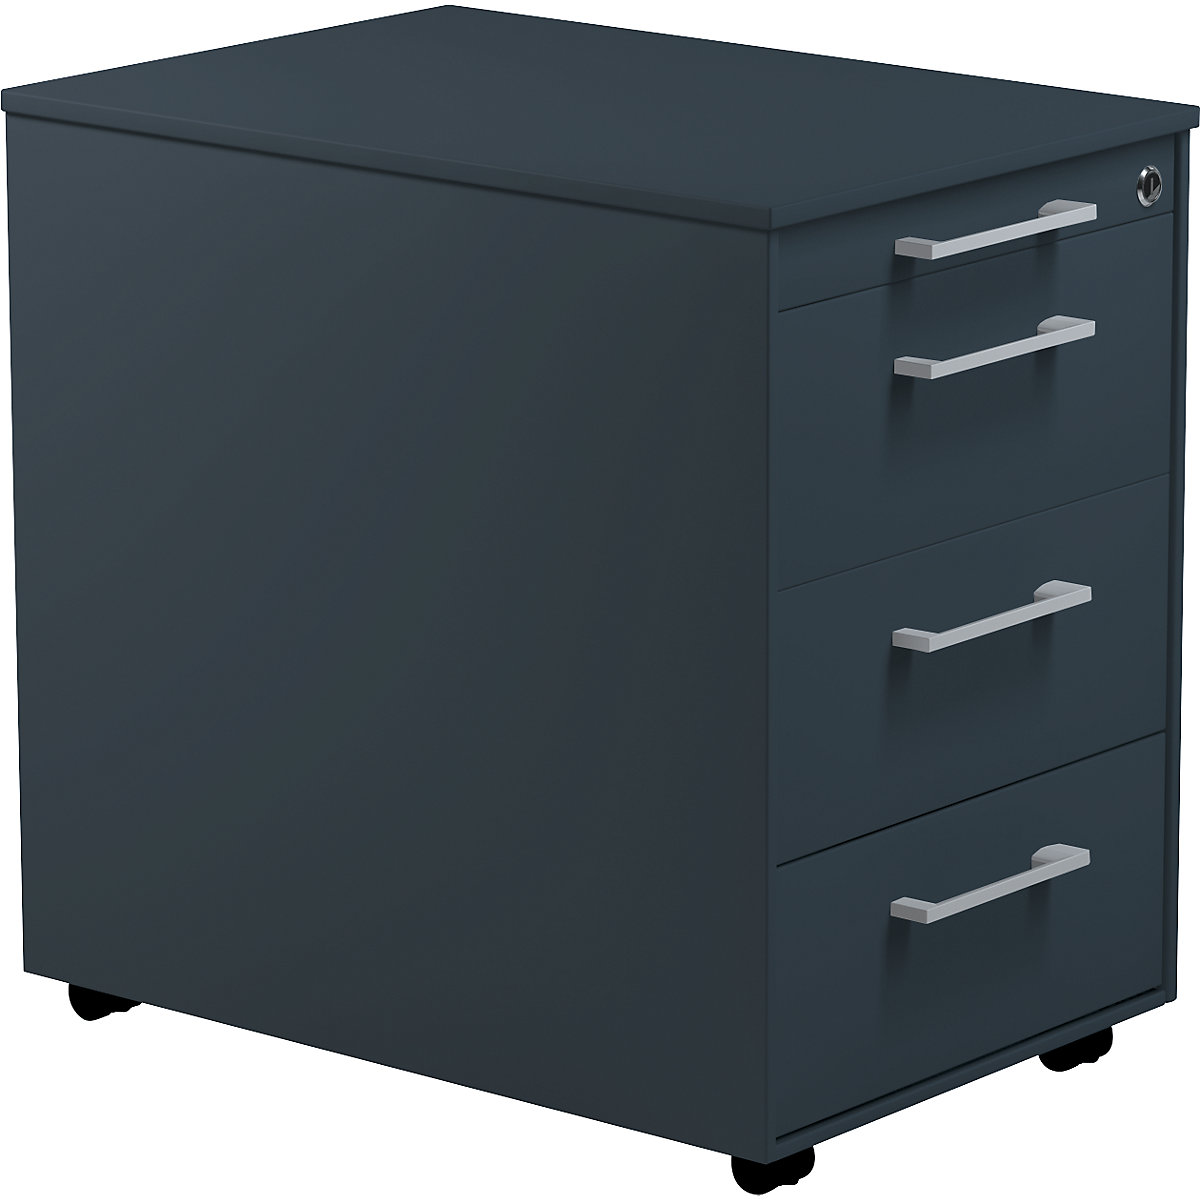 Zásuvkový kontajner na kolieskach – mauser, v x h 570 x 600 mm, 3 zásuvky, antracitová šedá / antracitová šedá / antracitová šedá-4